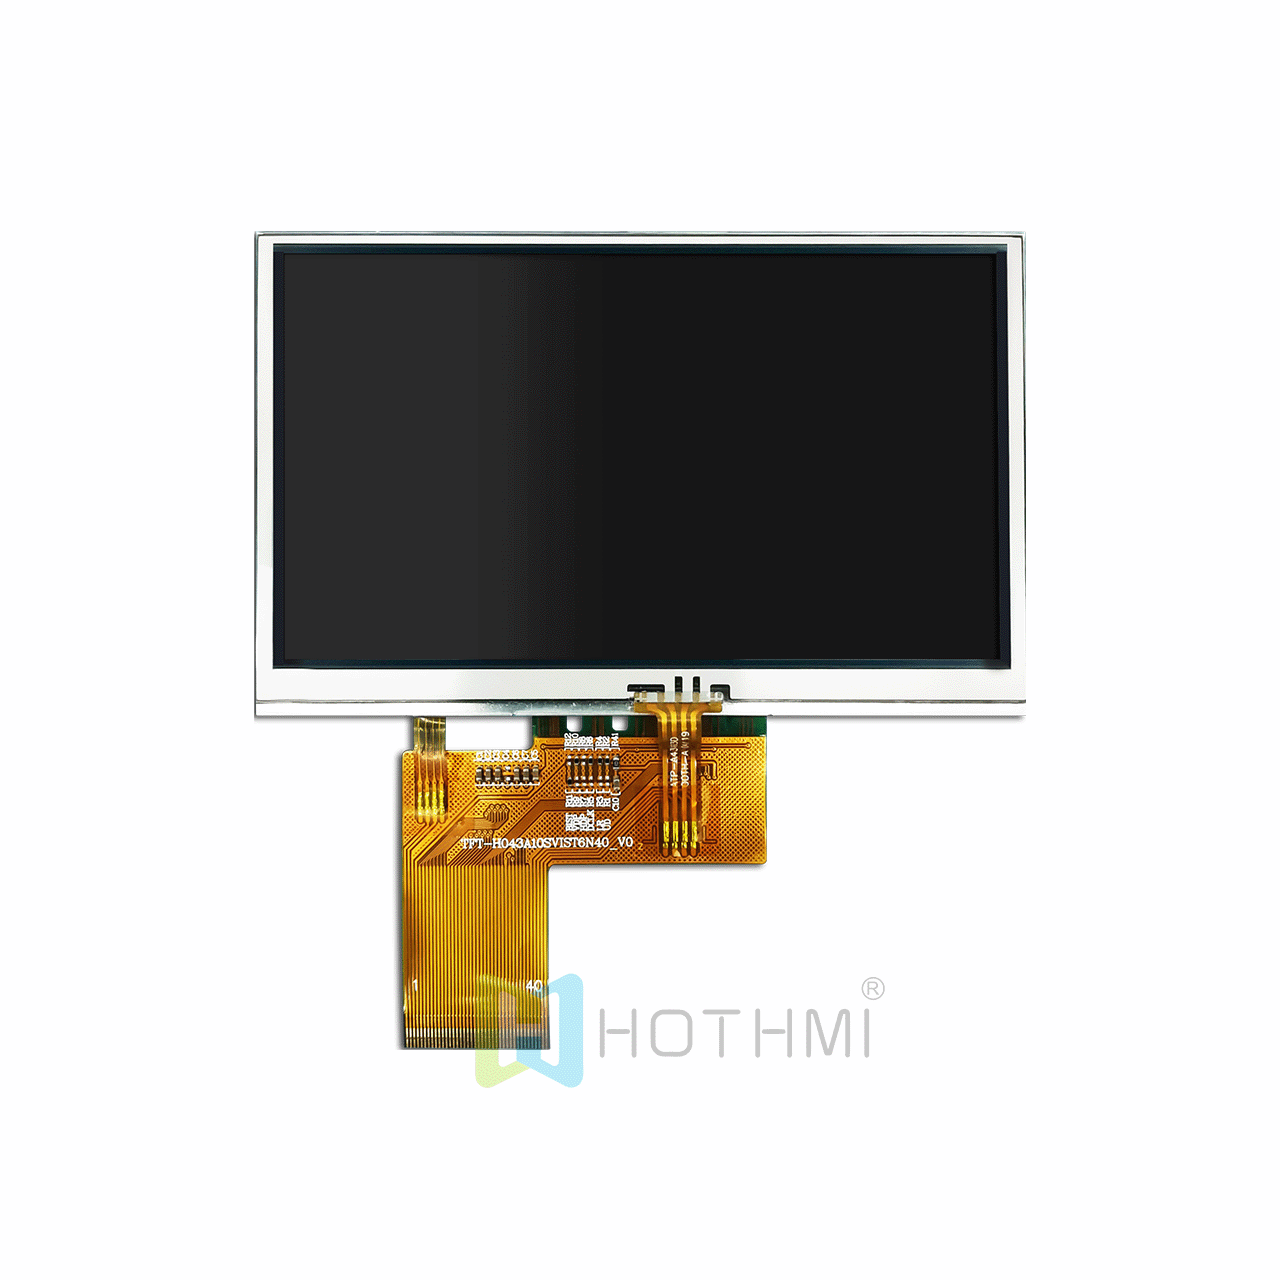 4.3寸TFT液晶显示屏模块电阻式触摸 800x480点阵 宽温 IPS全视角 阳光下可读 TTL ST7262兼容工控机